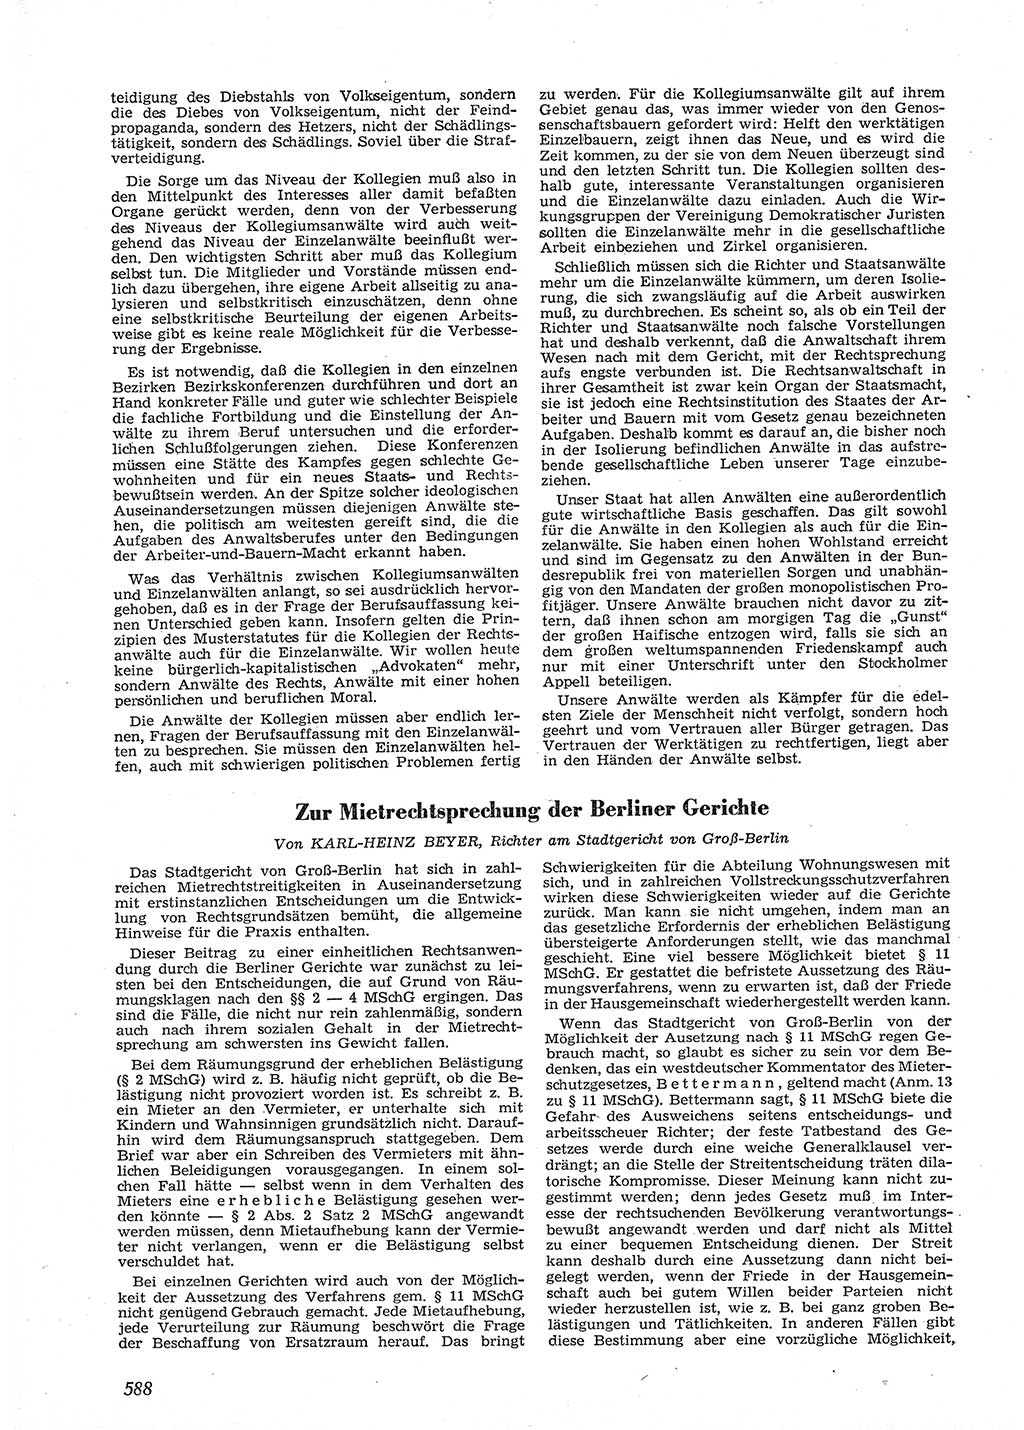 Neue Justiz (NJ), Zeitschrift für Recht und Rechtswissenschaft [Deutsche Demokratische Republik (DDR)], 9. Jahrgang 1955, Seite 588 (NJ DDR 1955, S. 588)